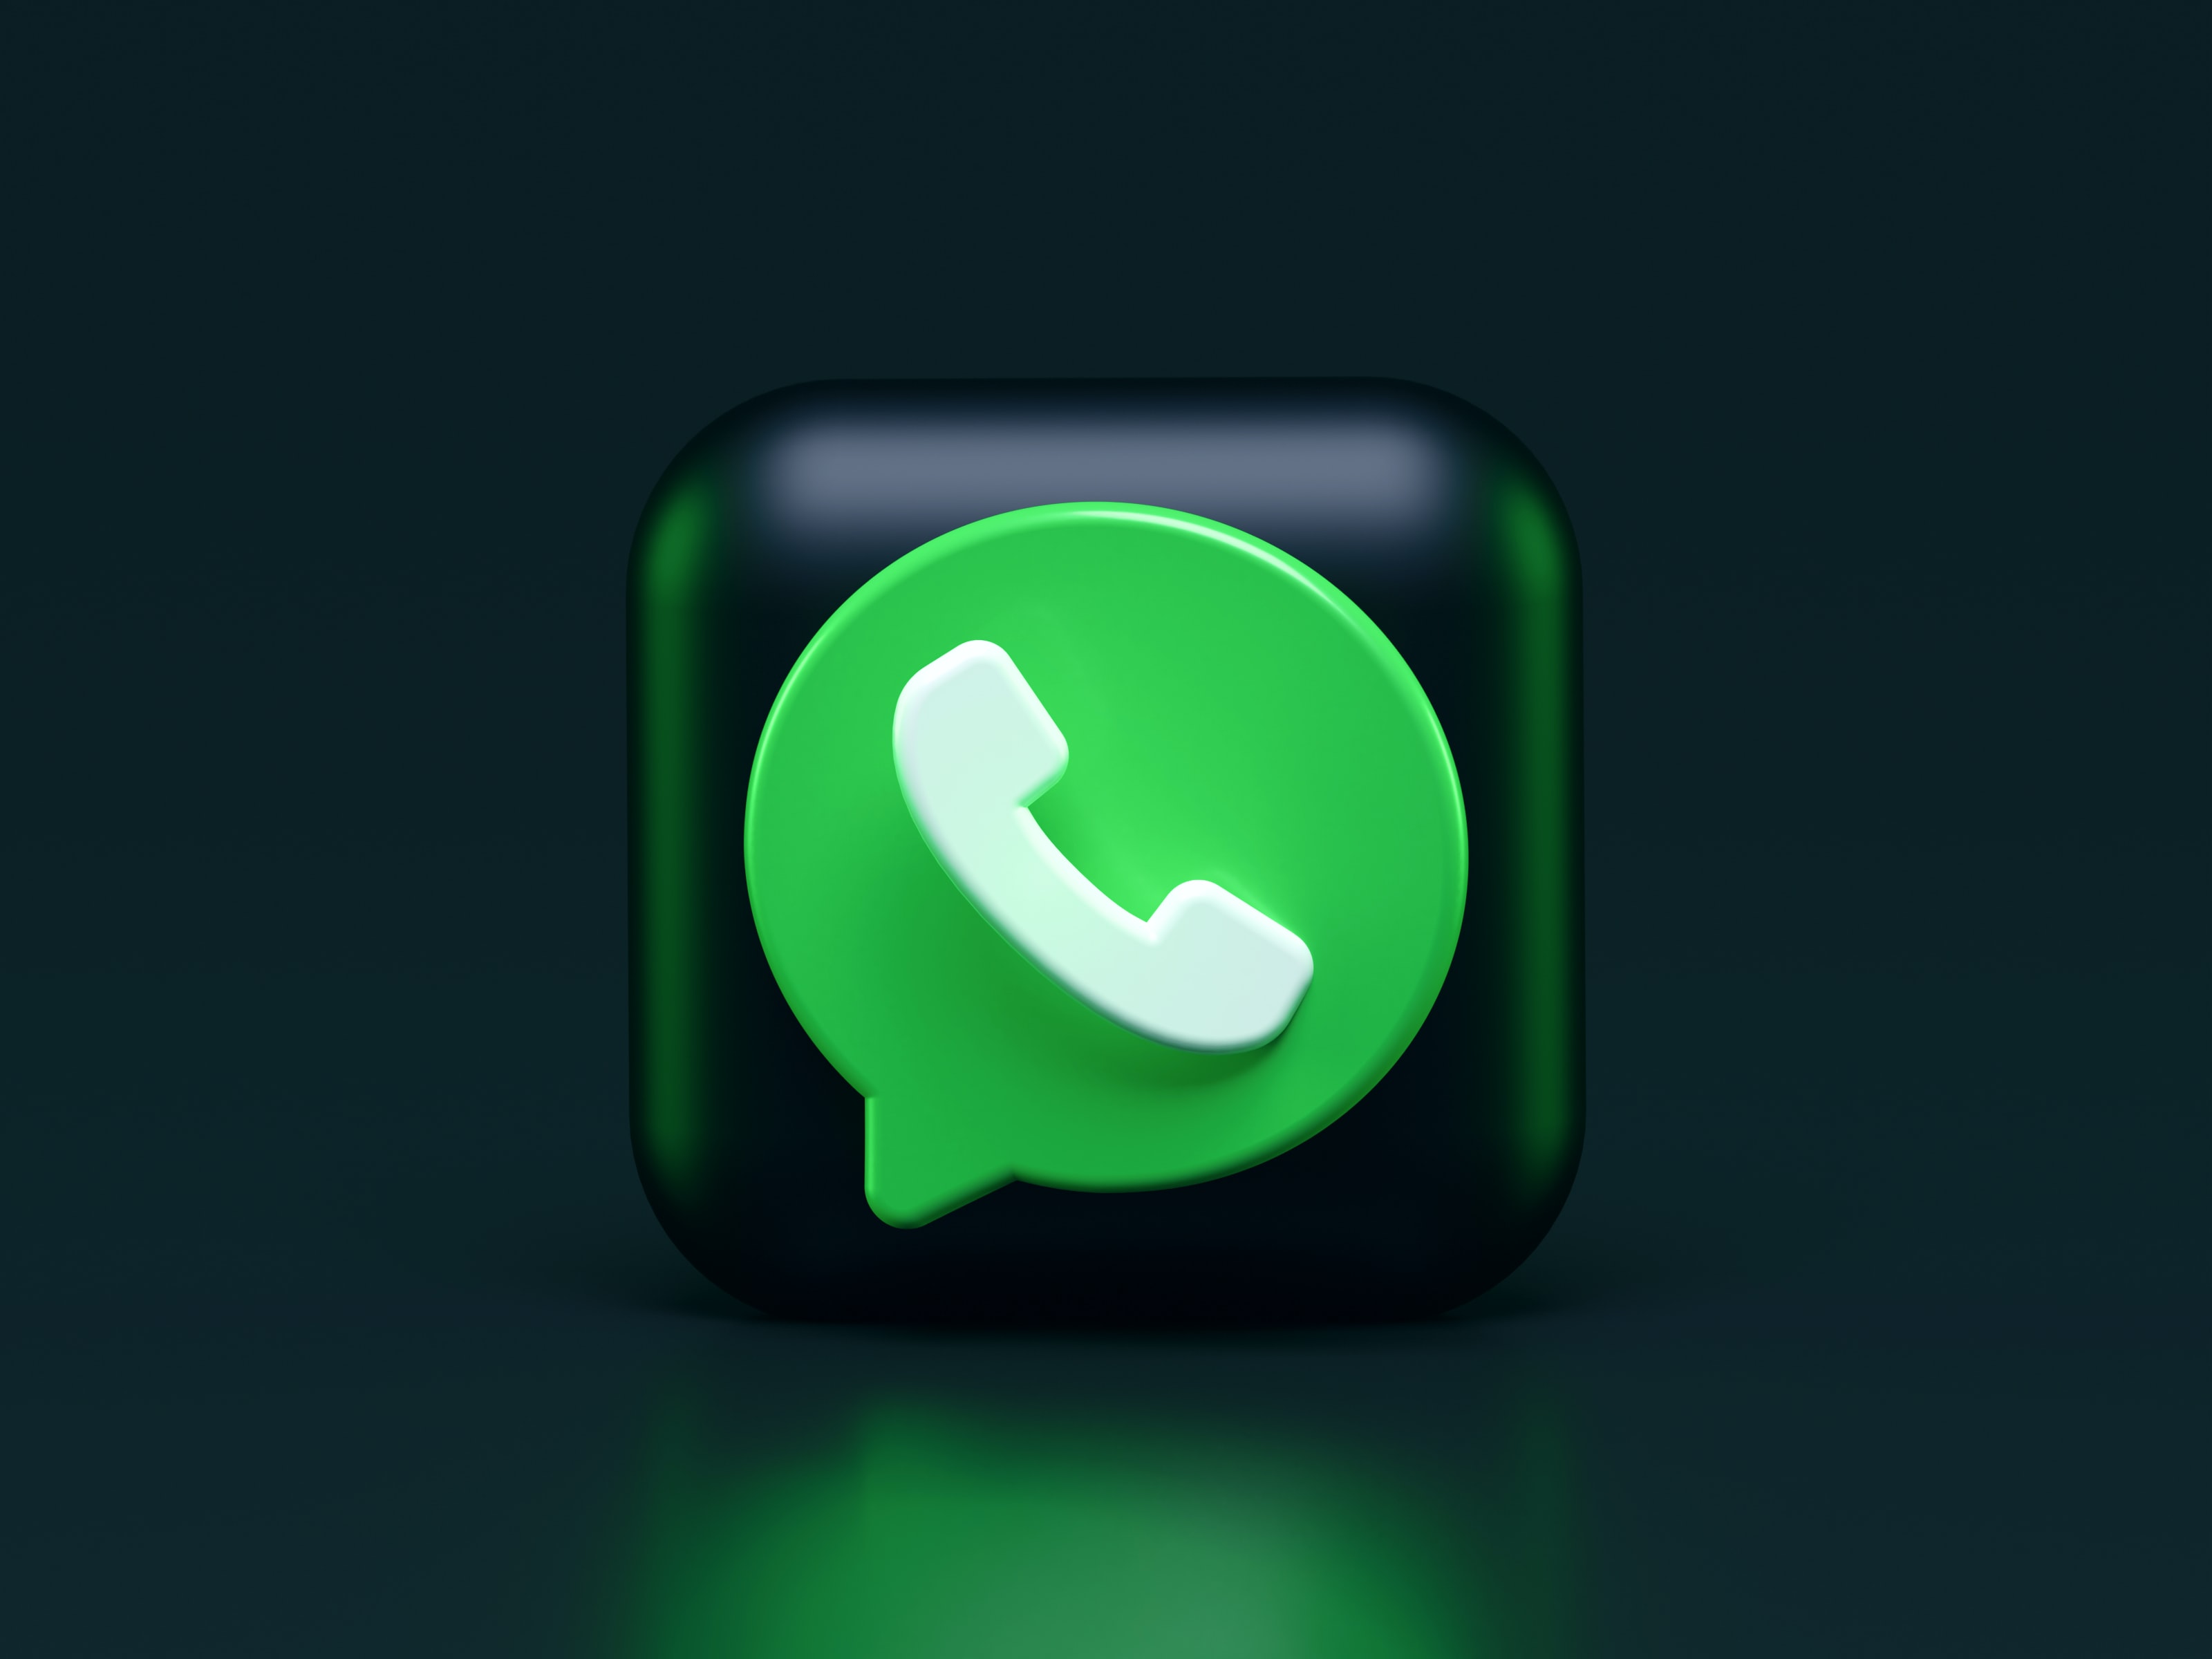 1 Kasım'dan itibaren Whatsapp kullanamayacak telefonlar